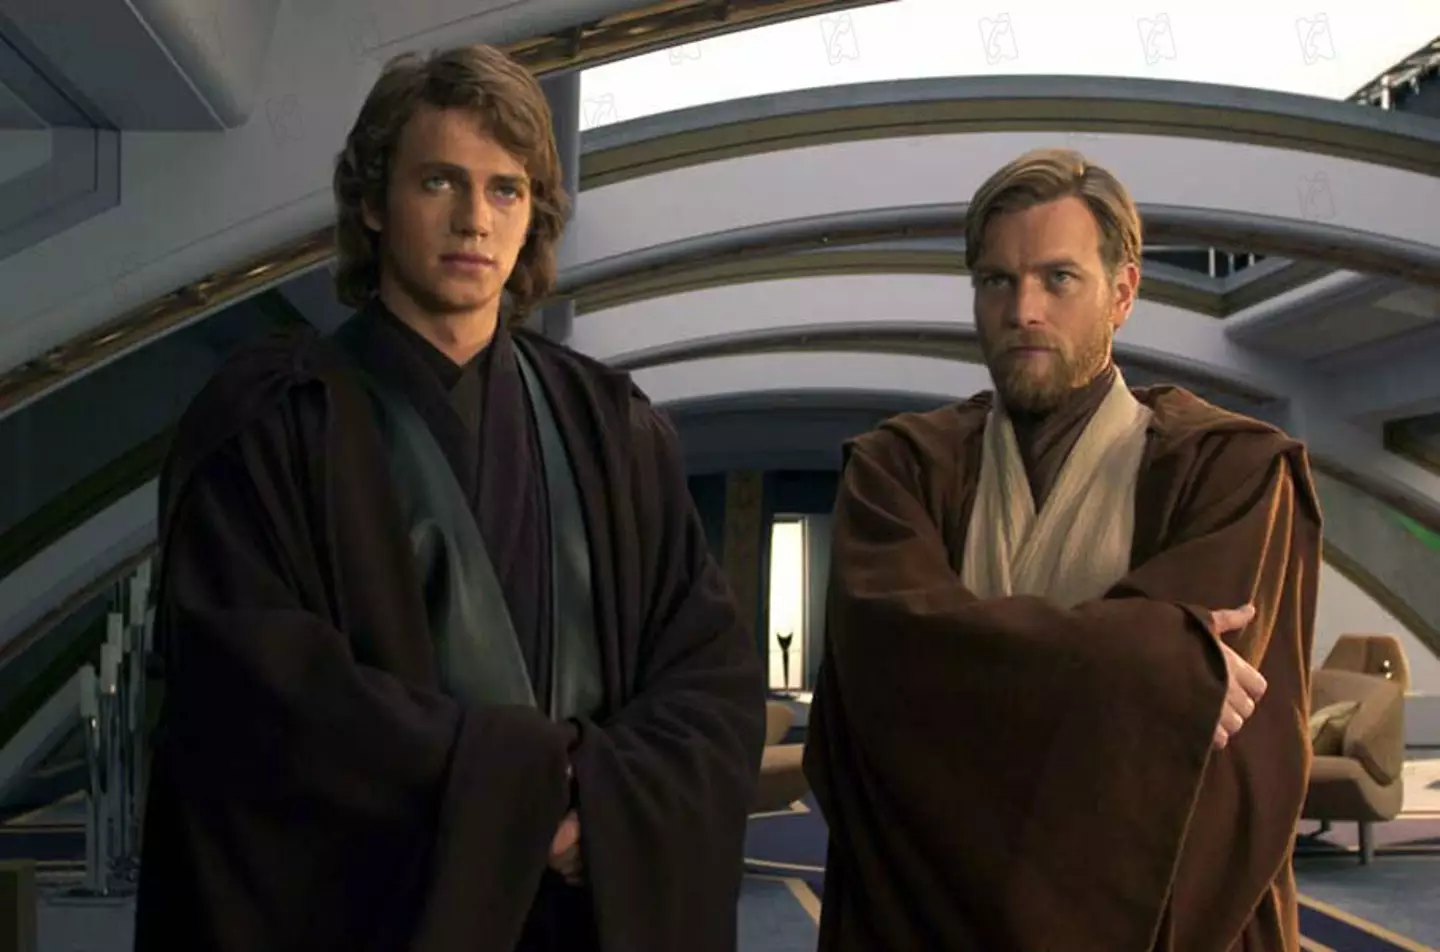 Ewan McGregor and Hayden Christensen in 2005's Revenge of the Sith.